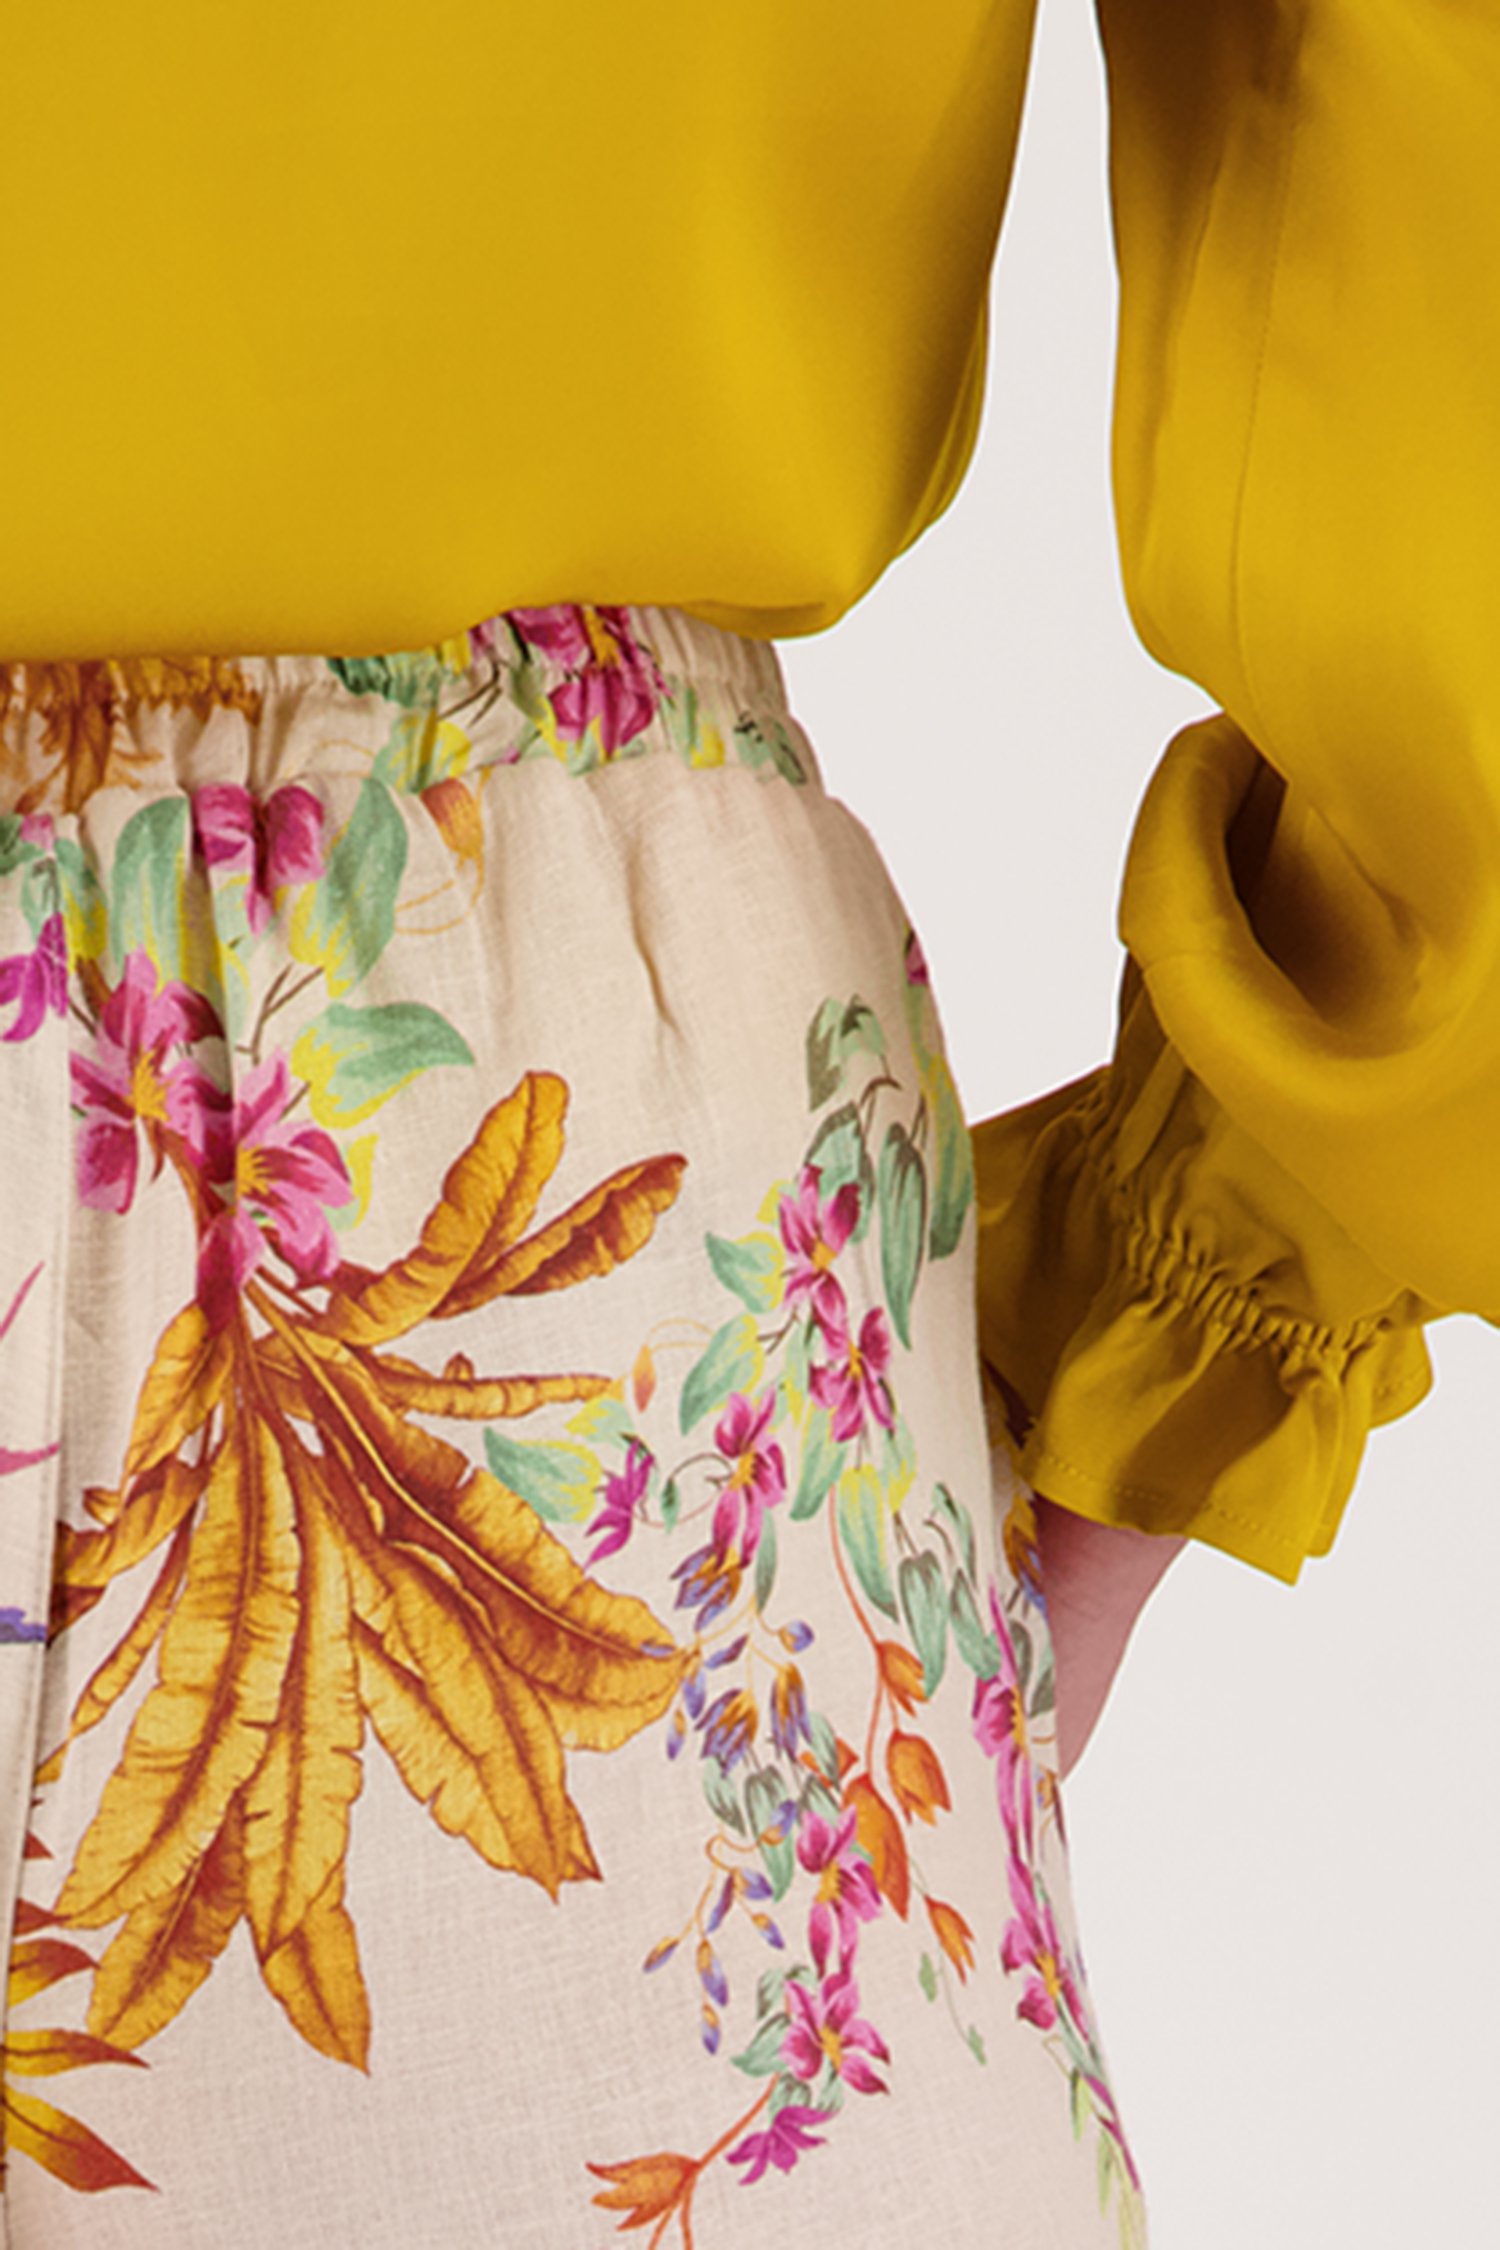 Beige linnen broek met kleurrijke bloemenprint van Diane Laury voor Dames